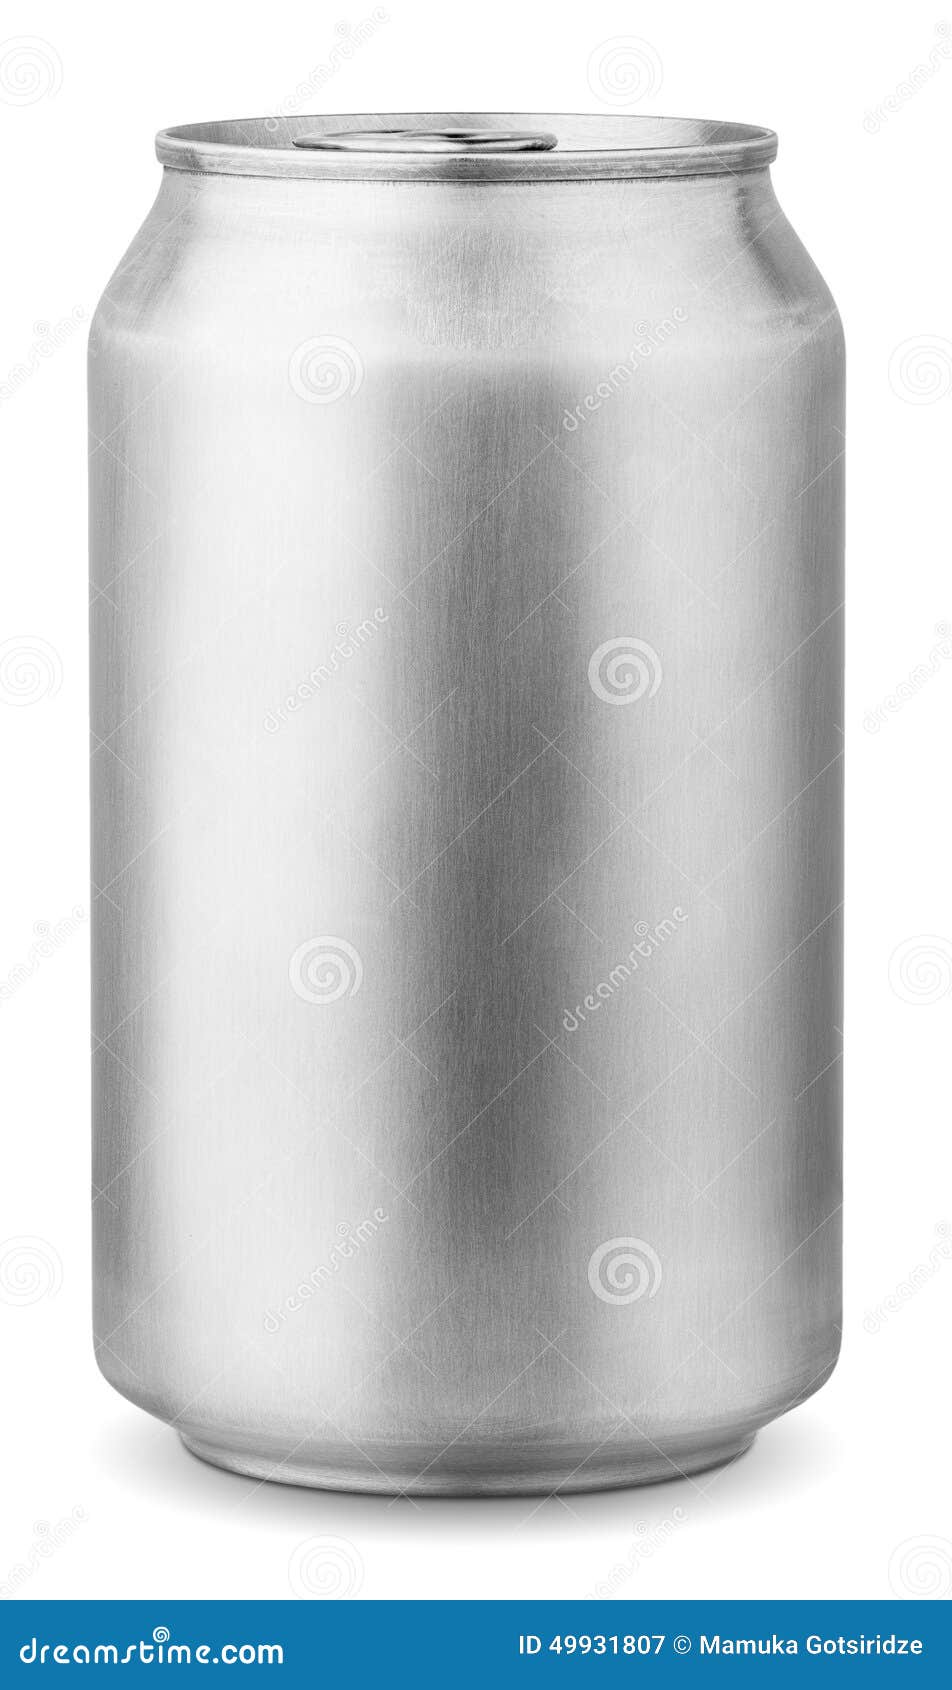 330 ml aluminum can